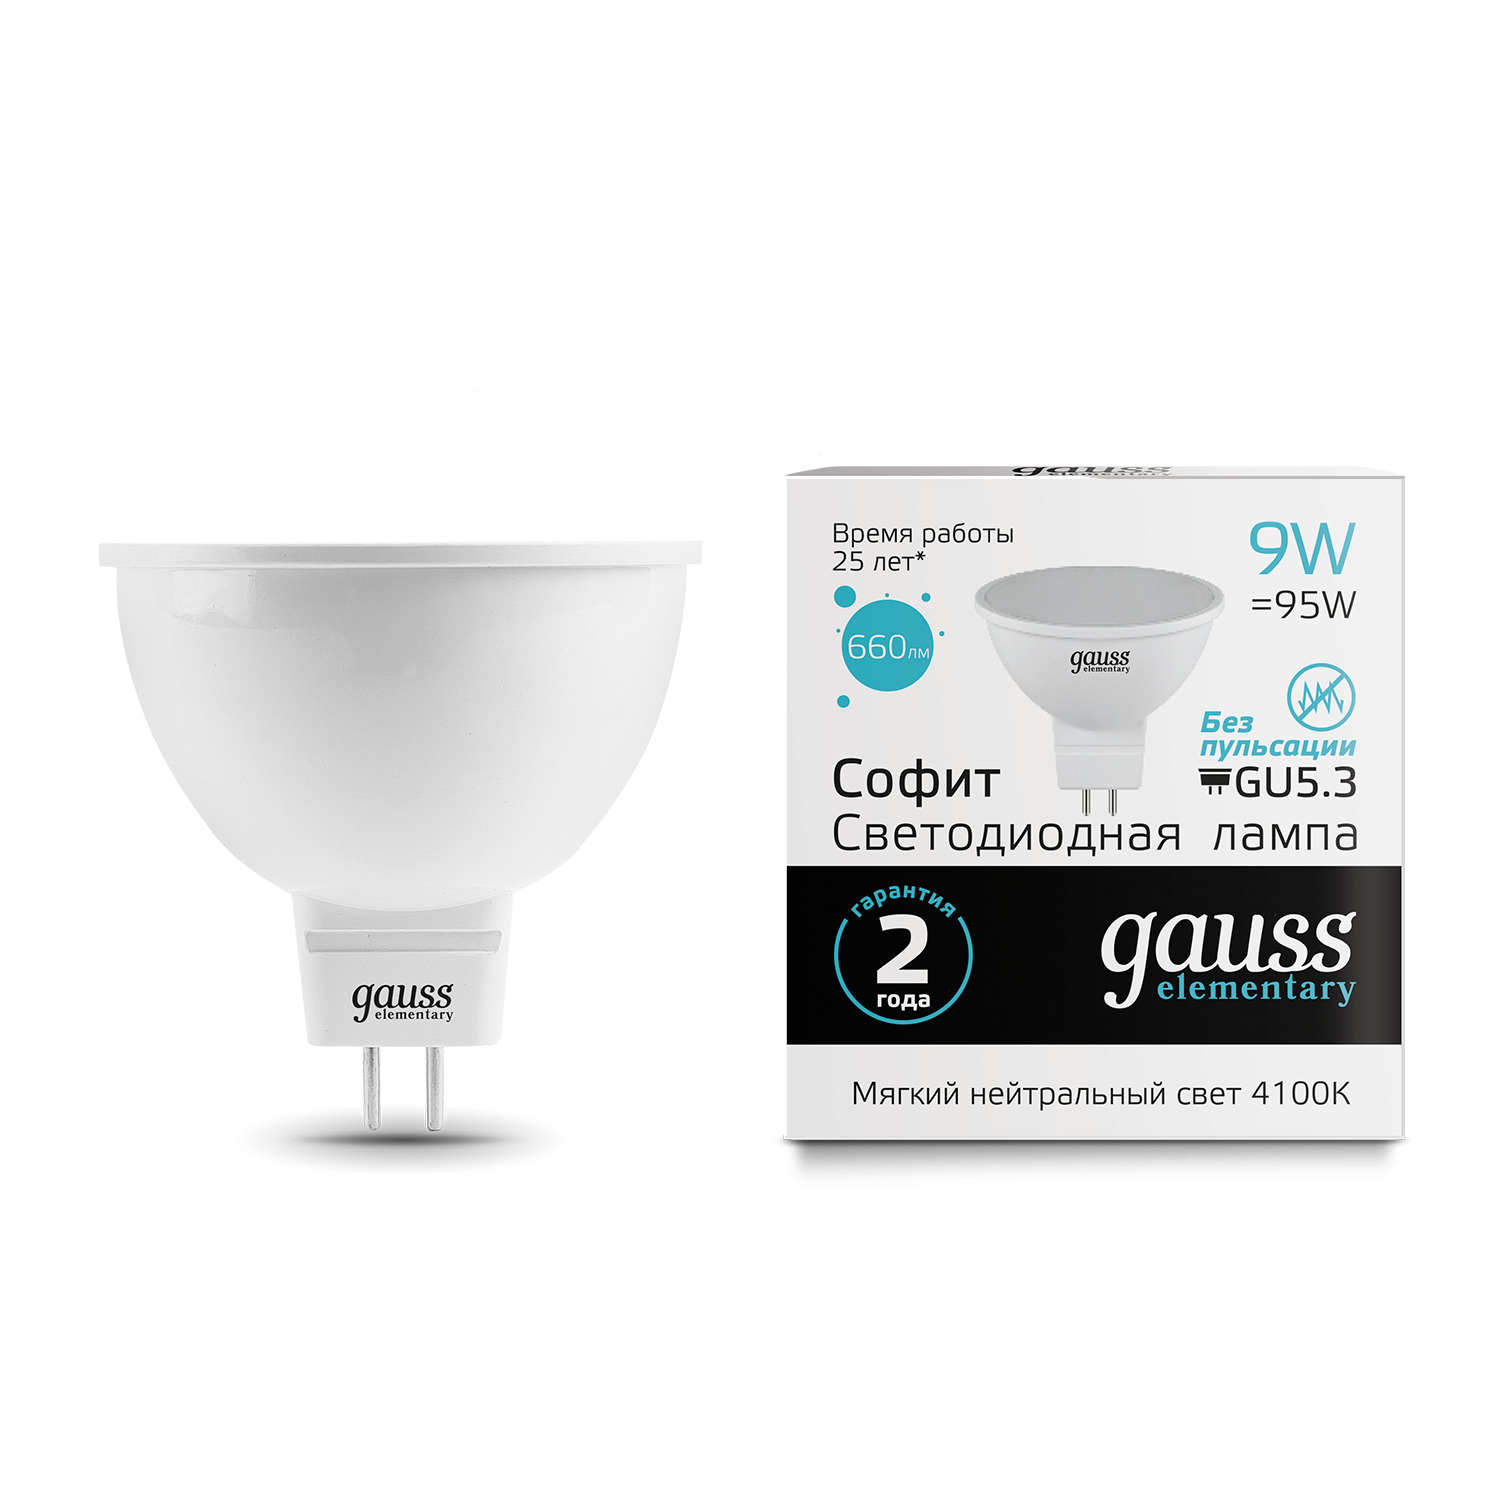 Лампа Gauss LED Elementary MR16 GU5.3 9W 4100K gauss led elementary mr16 gu5 3 5 5w 4100к 1 10 100